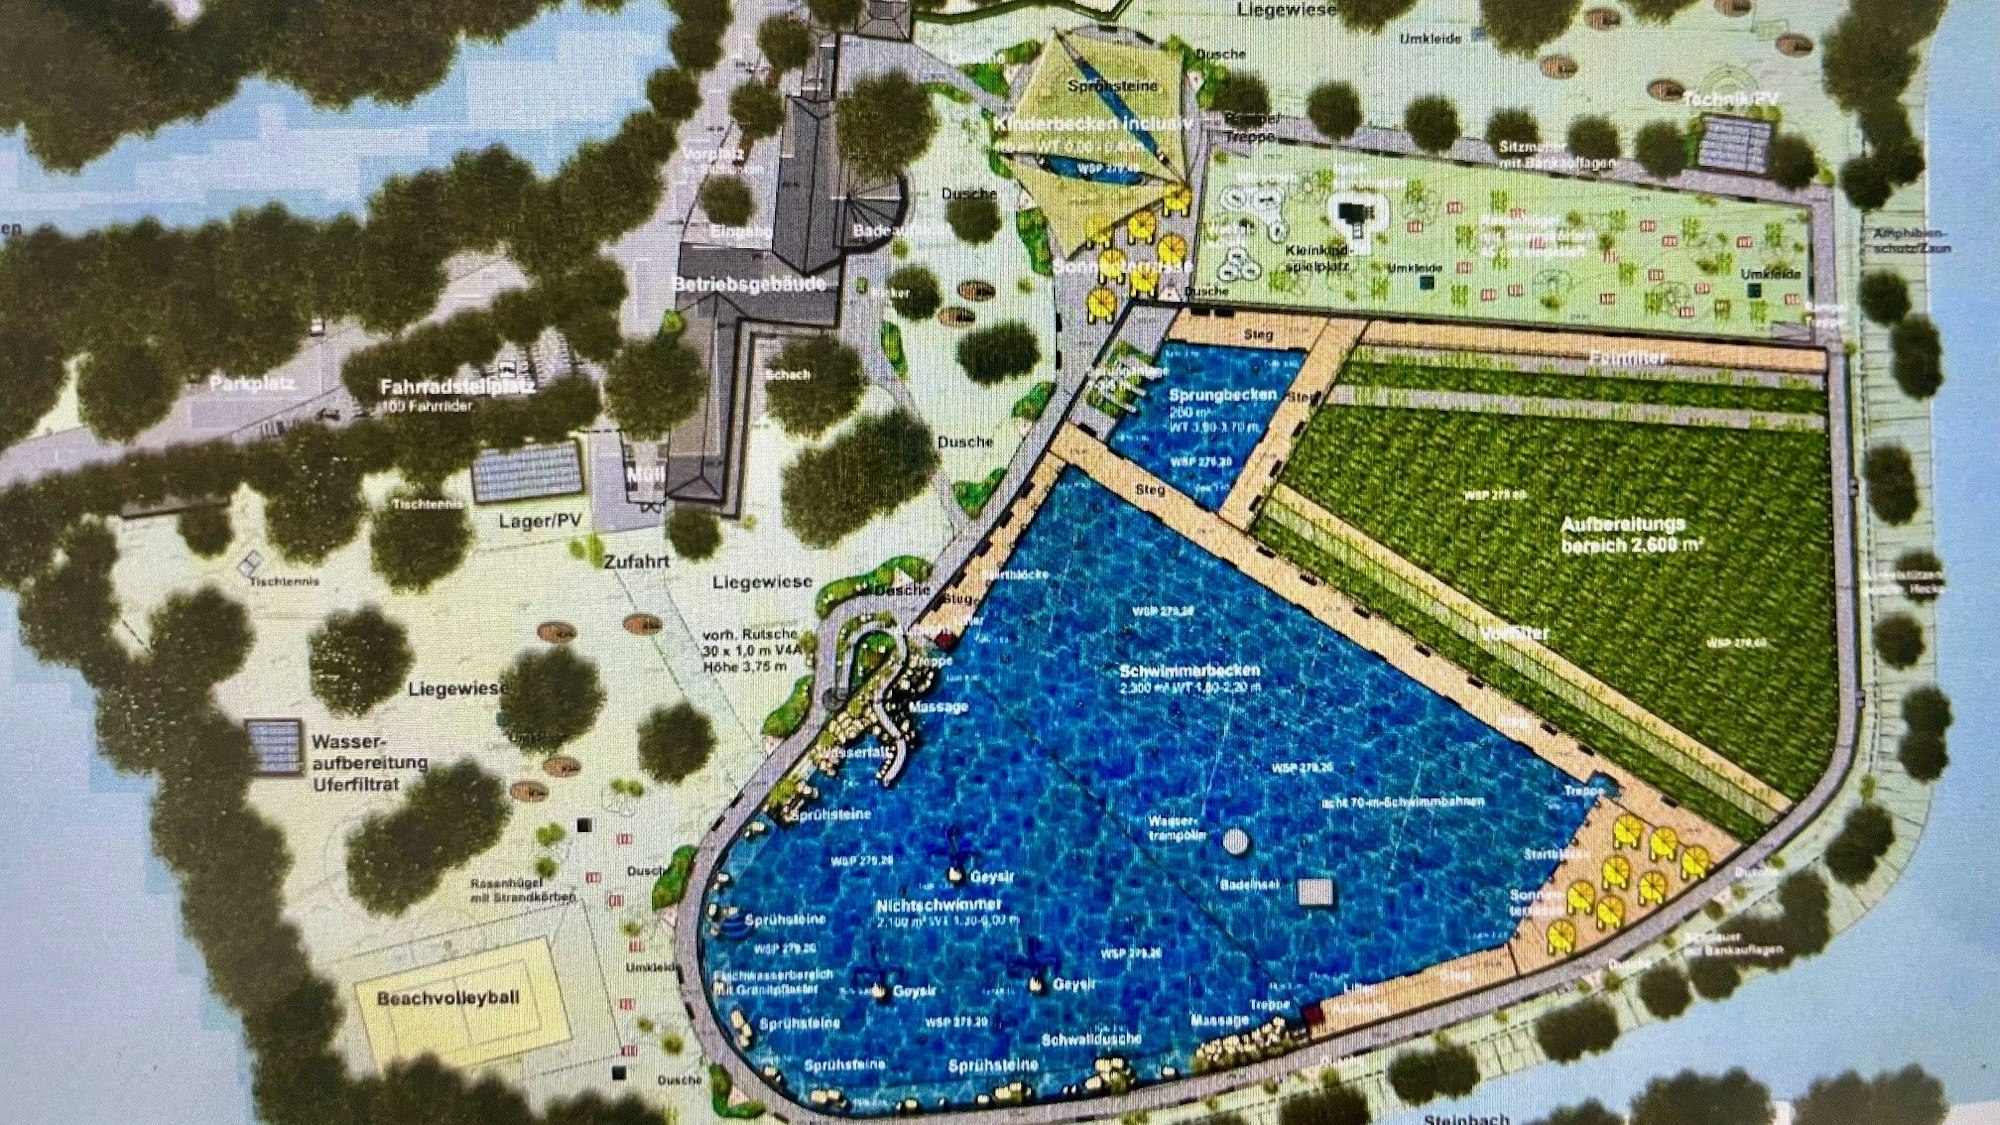 Die Zeichnung zeigt die geplante Aufteilung für das künftige Waldfreibad. Der Schwimmerbereich ist kleiner als bisher, dafür ist Platz für ein neues Nichtschwimmerbecken und die biologische Aufbereitungszone.